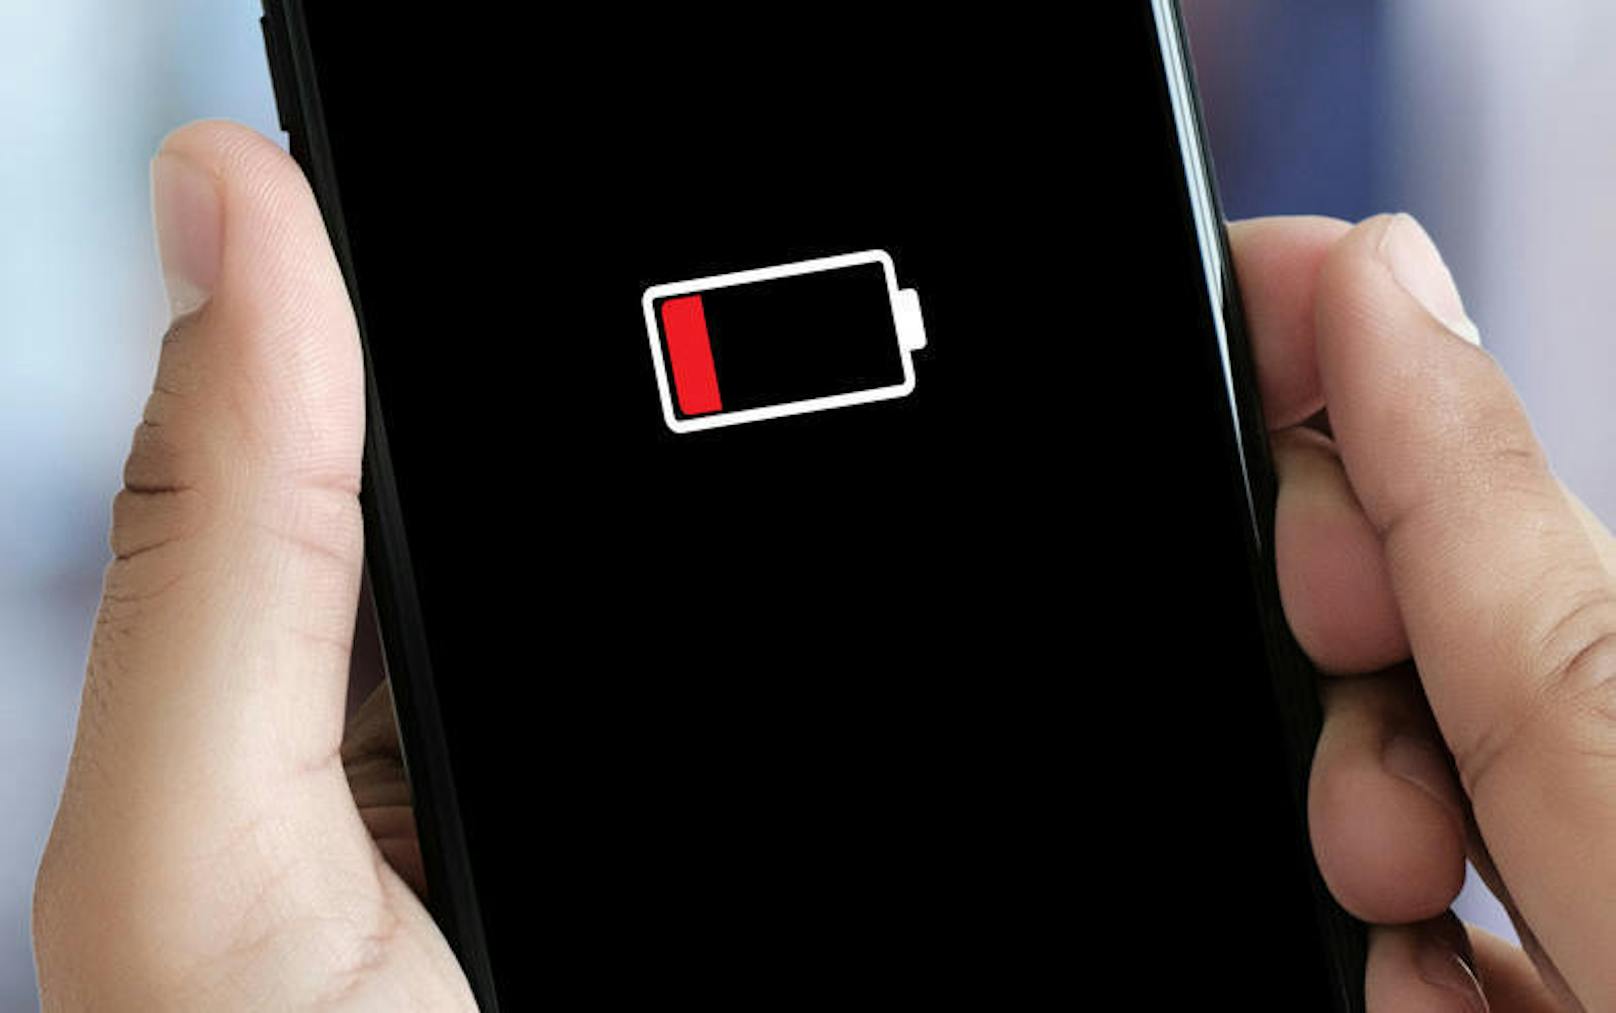 Du lädst dein iPhone immer über Nacht? Das kann dem Akku schaden. Die Funktion <b>optimiertes Laden der Batterie</b> soll nun helfen. Das Handy lernt, wann du lädst. Steckst du es immer um 22 Uhr ein, so lädt es sich nur bis 80 Prozent auf. Dann den Rest erst kurz bevor du aufstehst. Das soll den Alterungsprozess der Batterie verlangsamen. Das Feature kann unter Einstellungen > Batterie > Batteriezustand aktiviert werden.